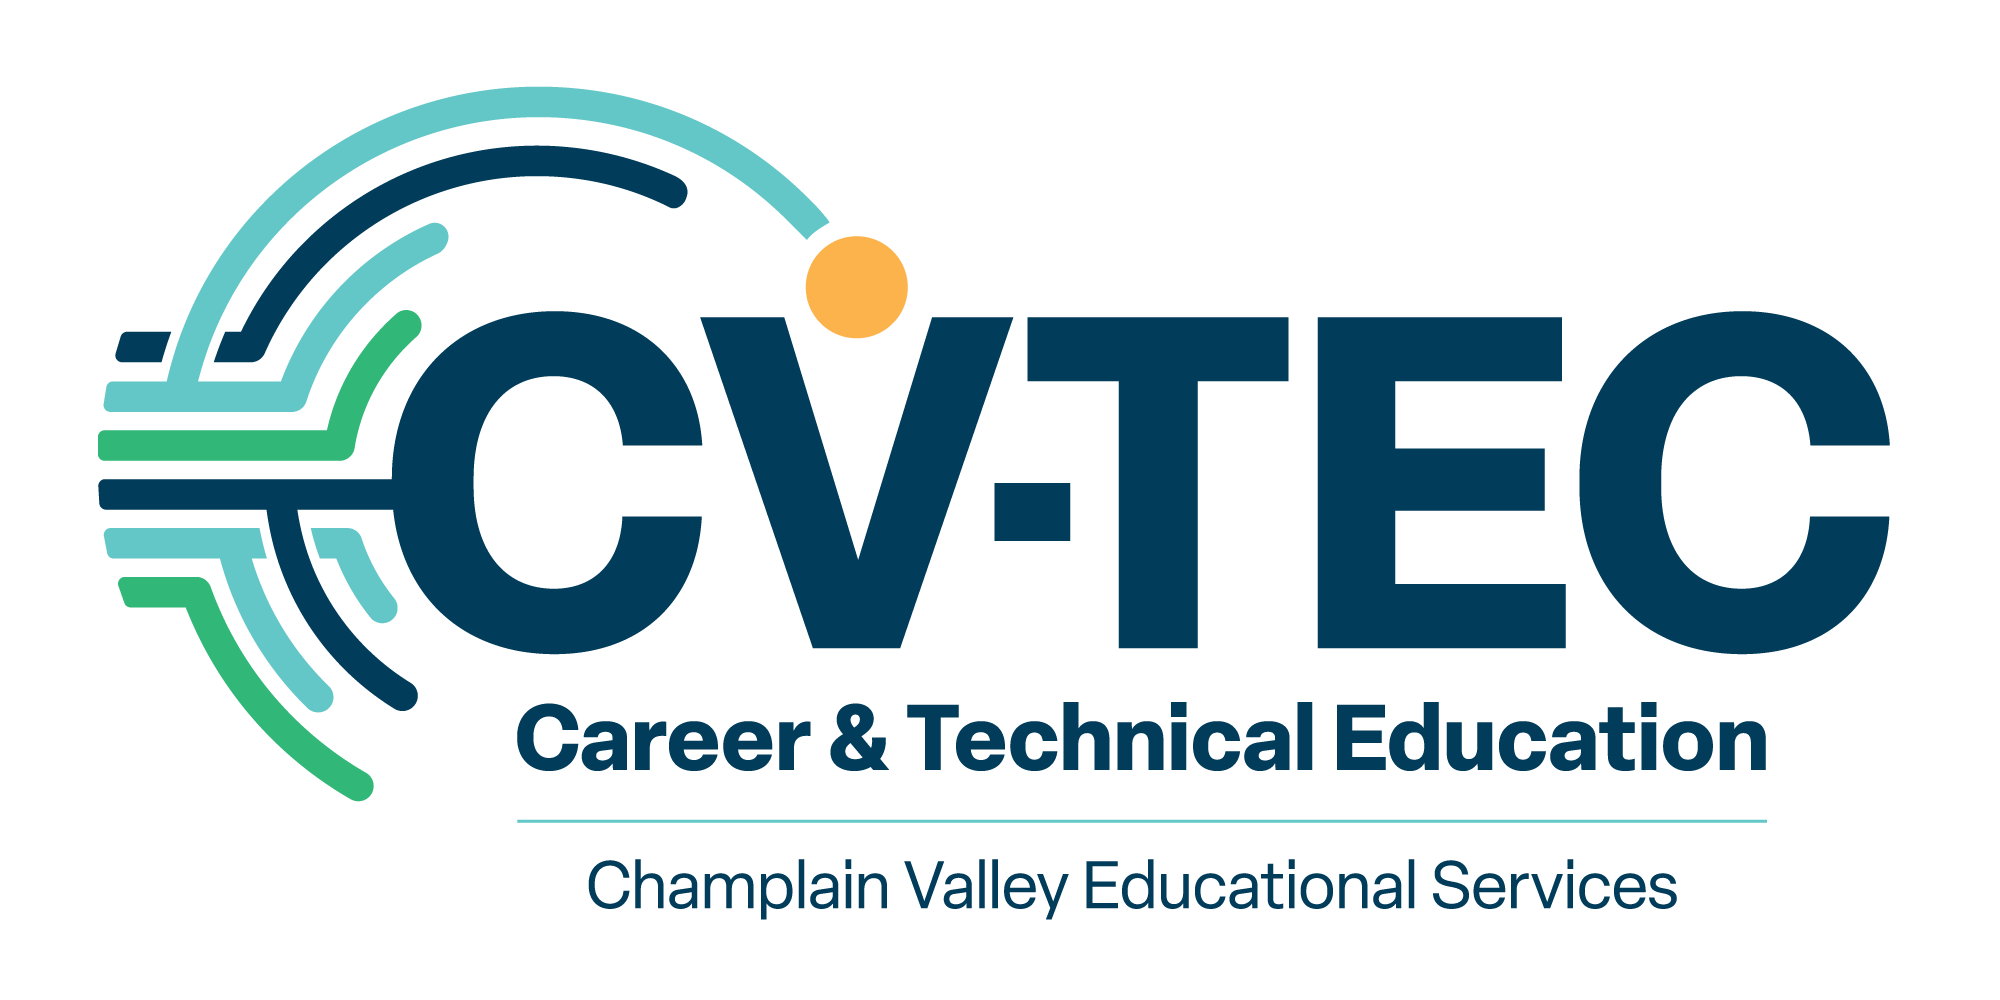 Image of the CV-TEC logo